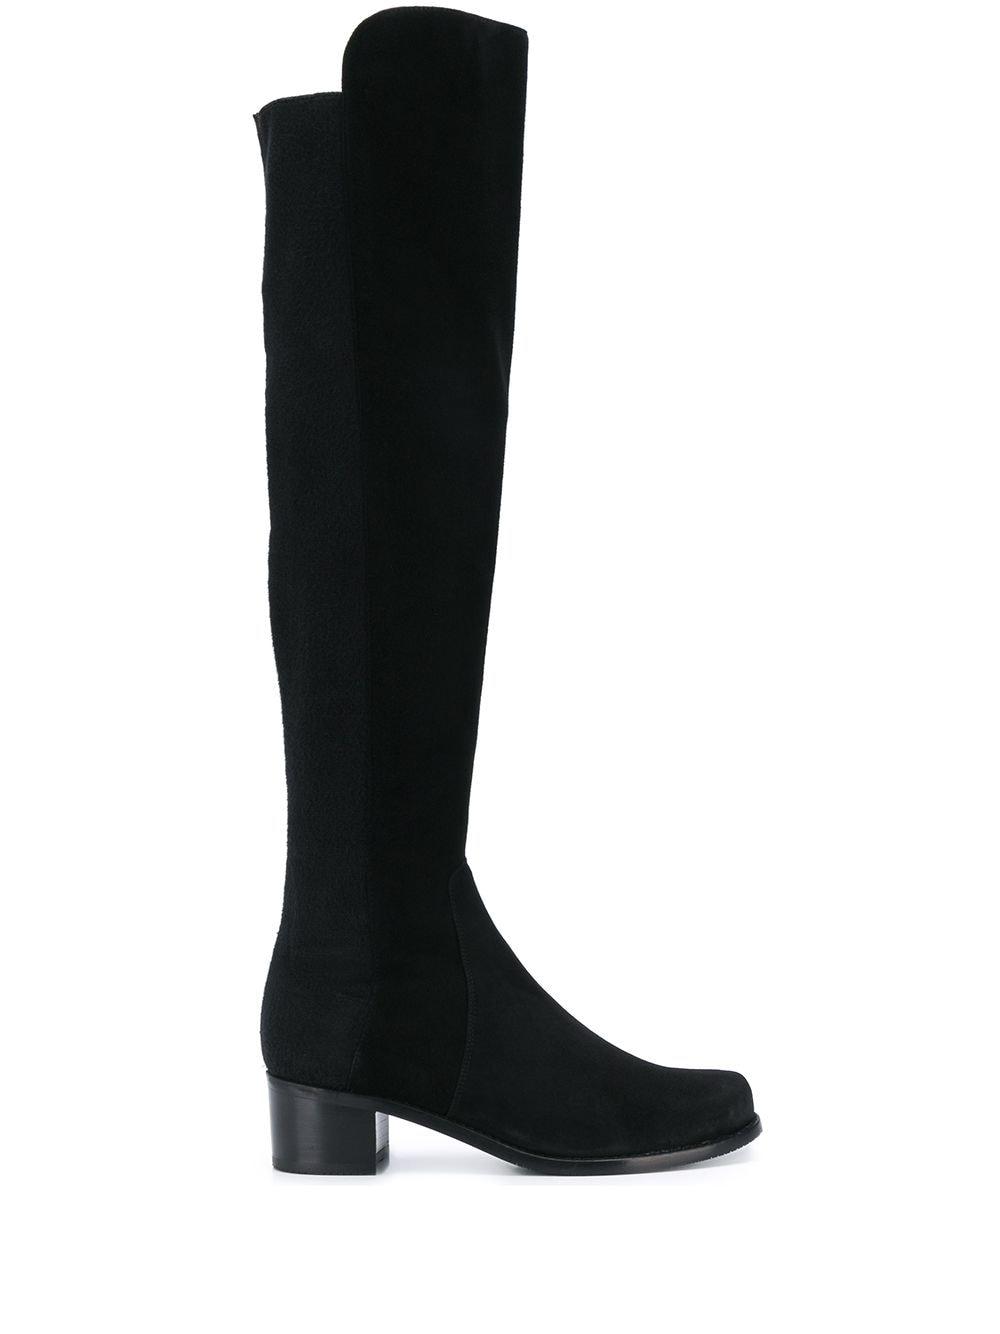 Stuart Weitzman 5050 Suede Over-The-Knee Boots in Black Suede (Black ...